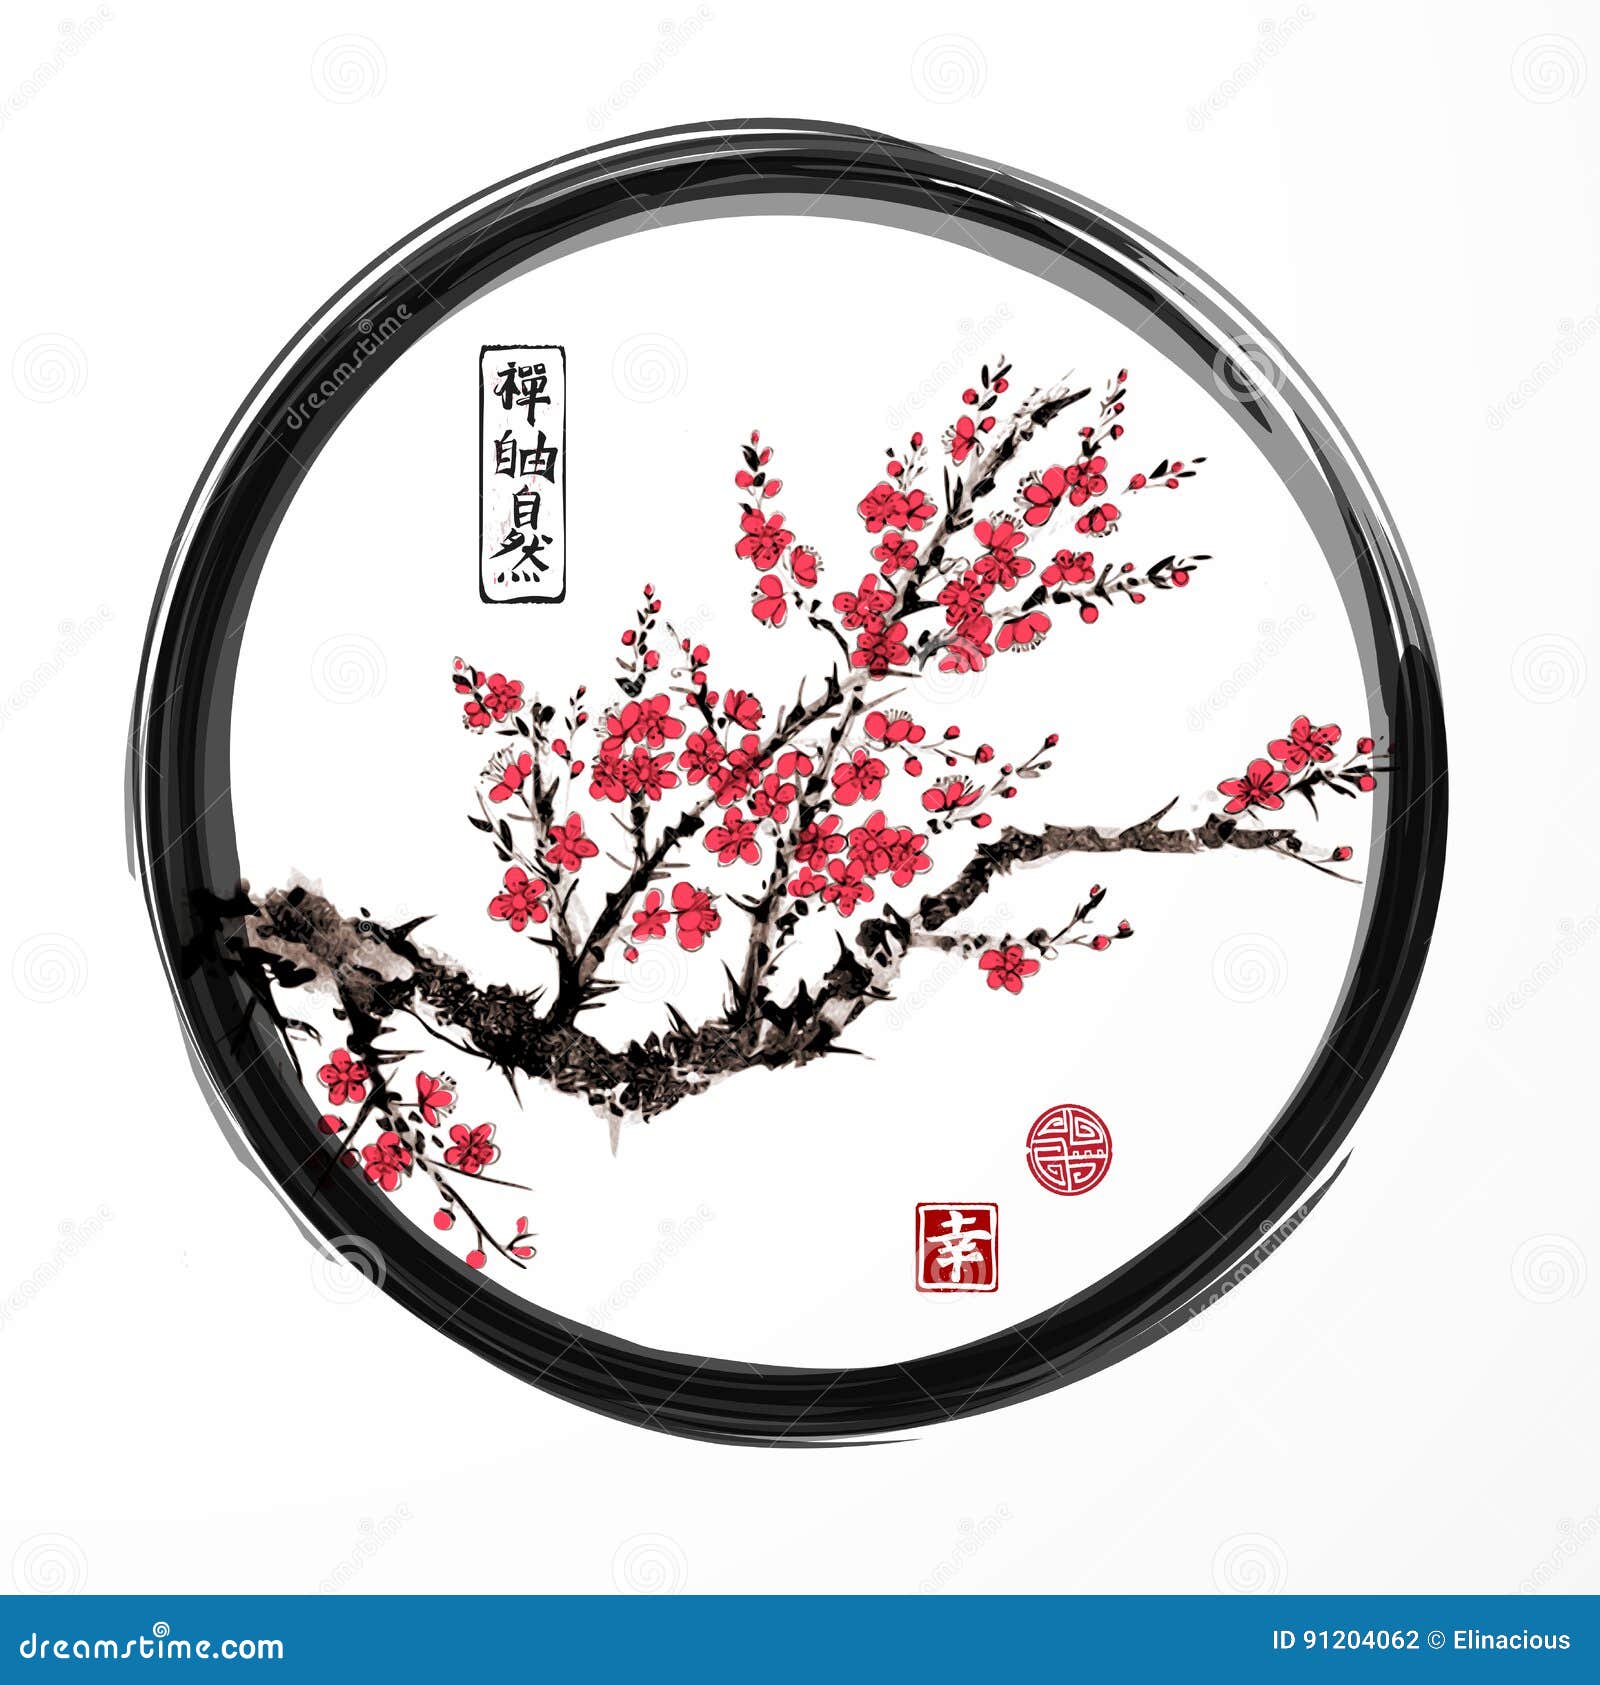 oriental sakura cherry tree blossoming in black enso zen circle on white background. contains hieroglyphs - zen, freedom